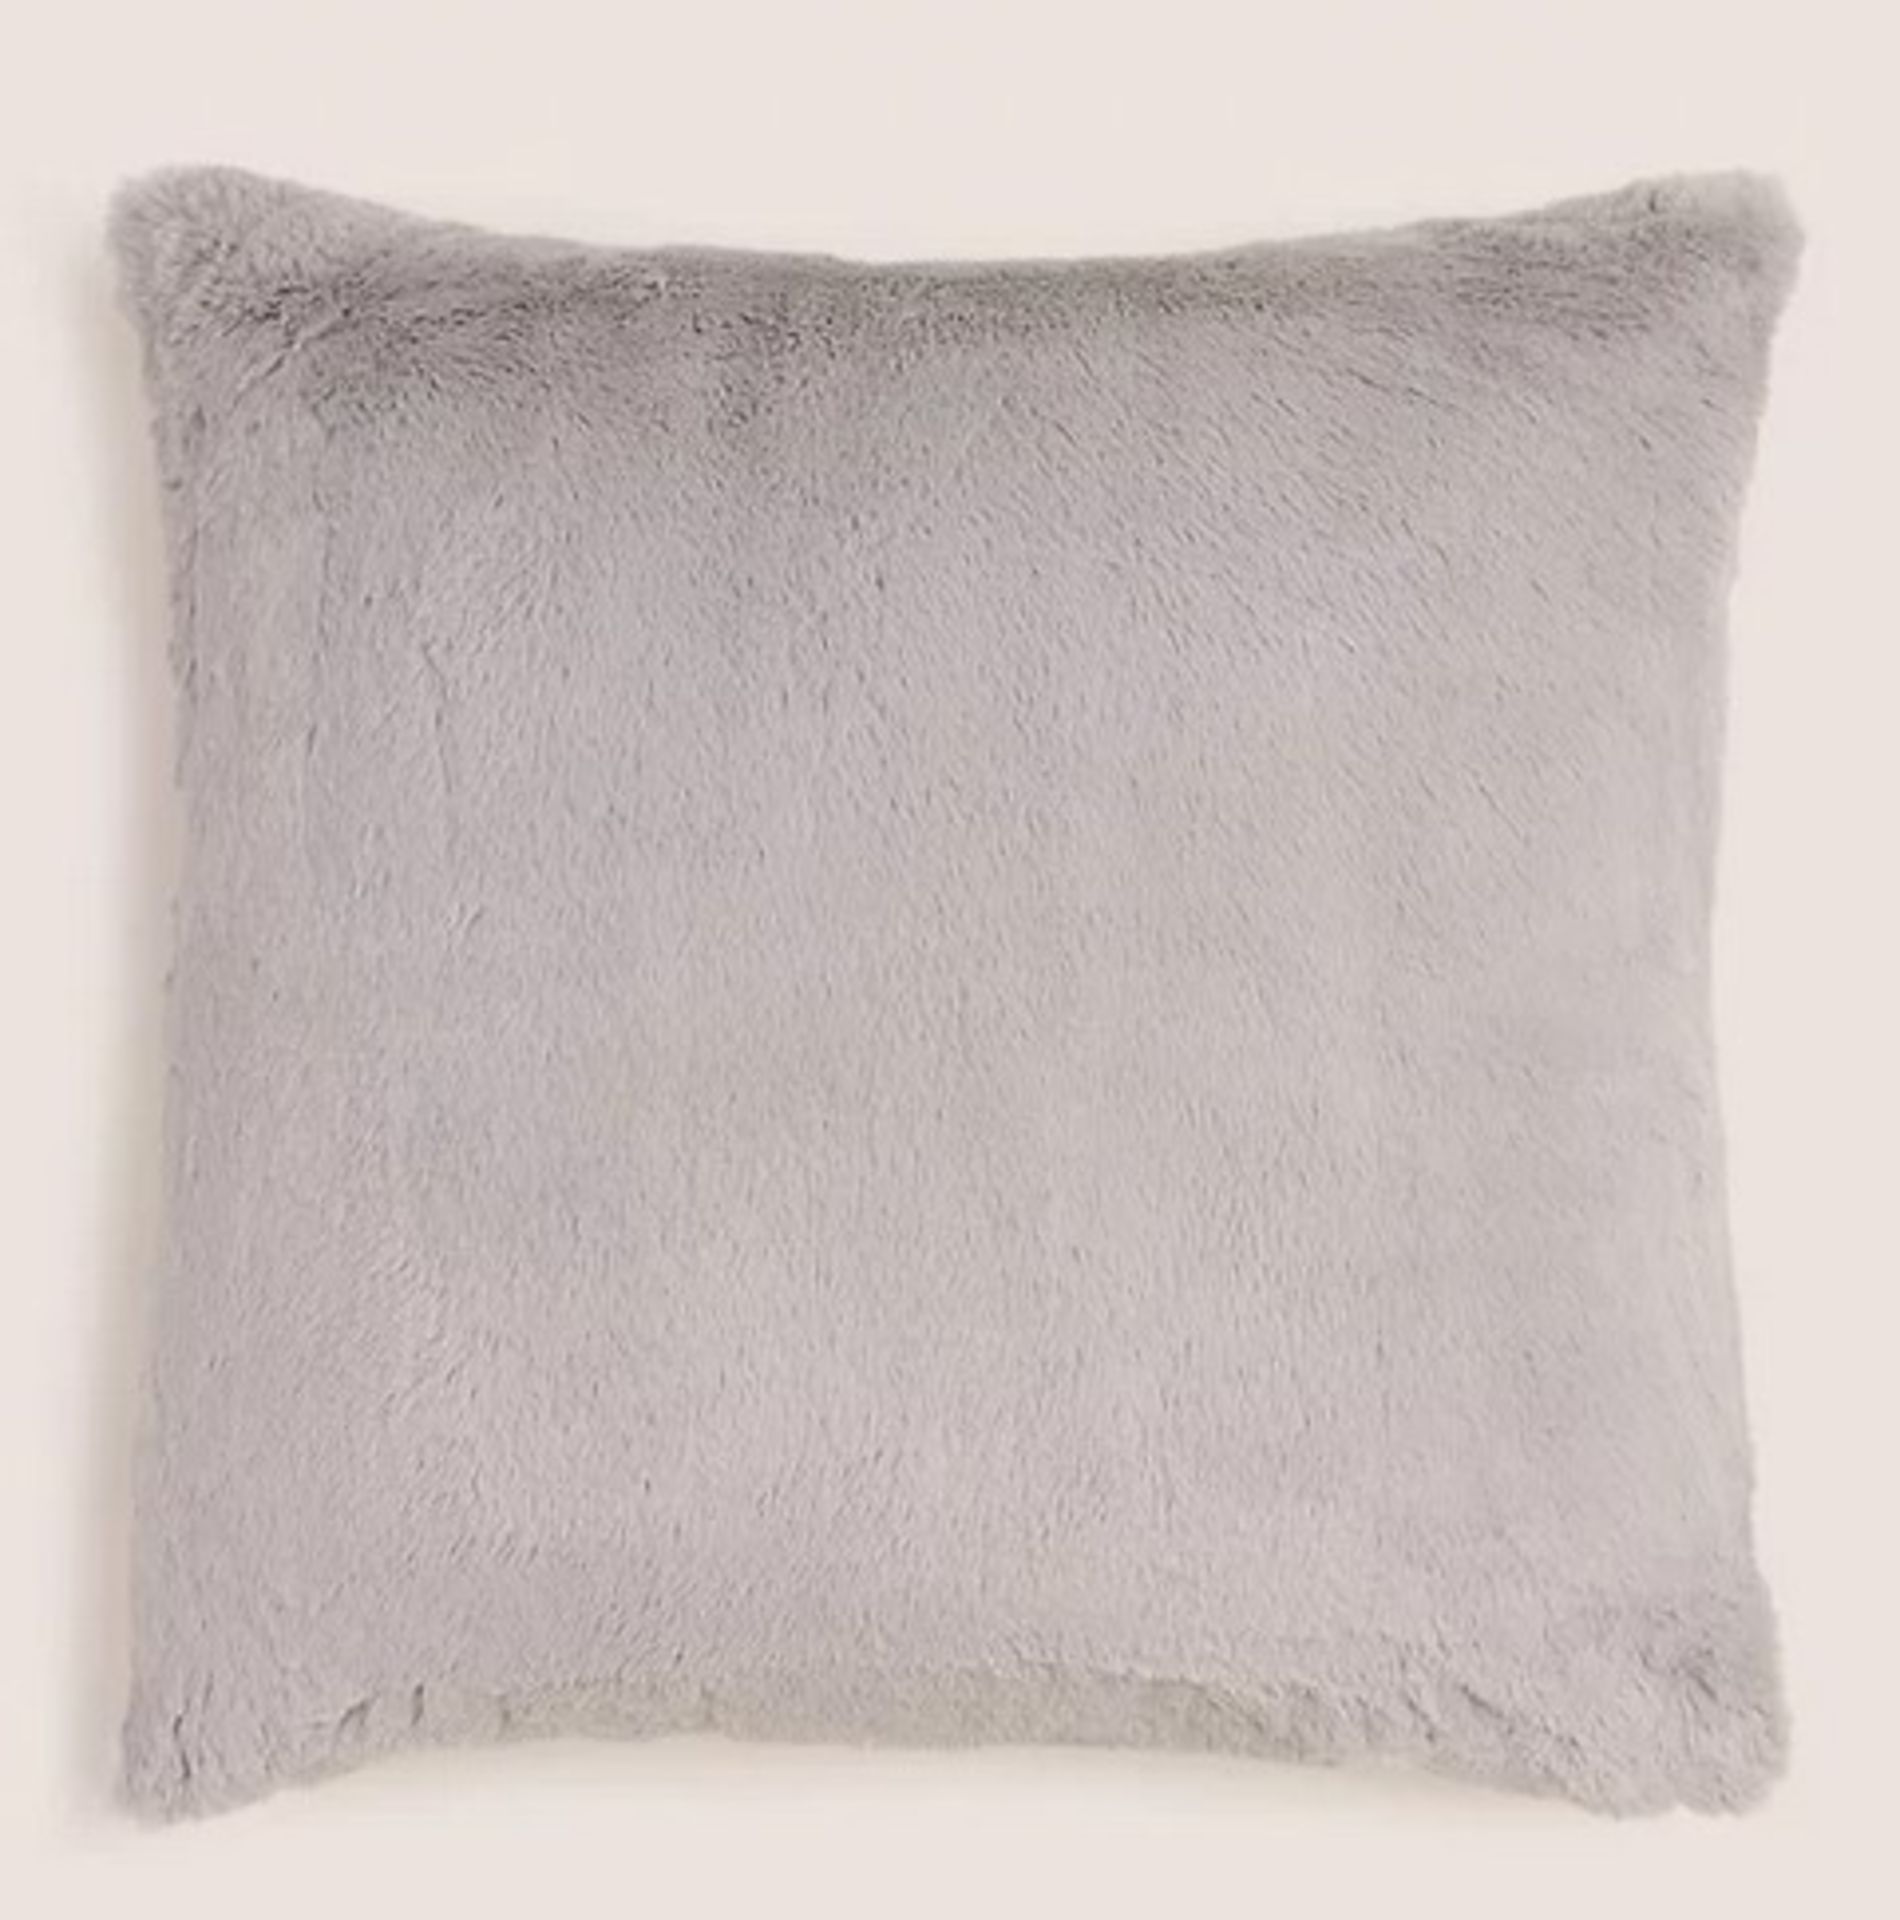 (137/6K) 17x Super Soft Faux Fur Cushions. Dimensions: (H43x W43cm Each)